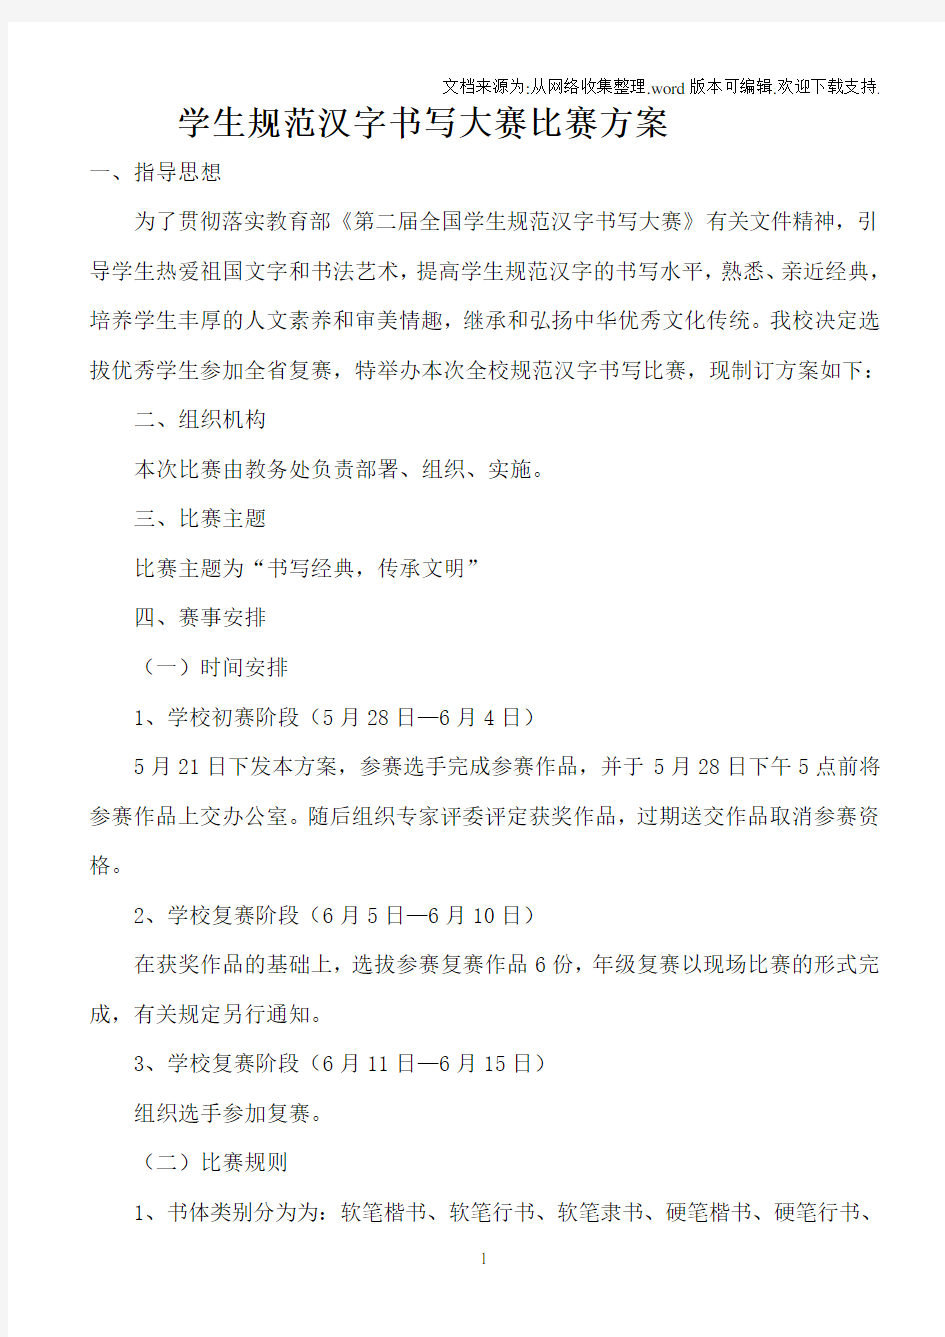 学生规范汉字书写大赛比赛方案